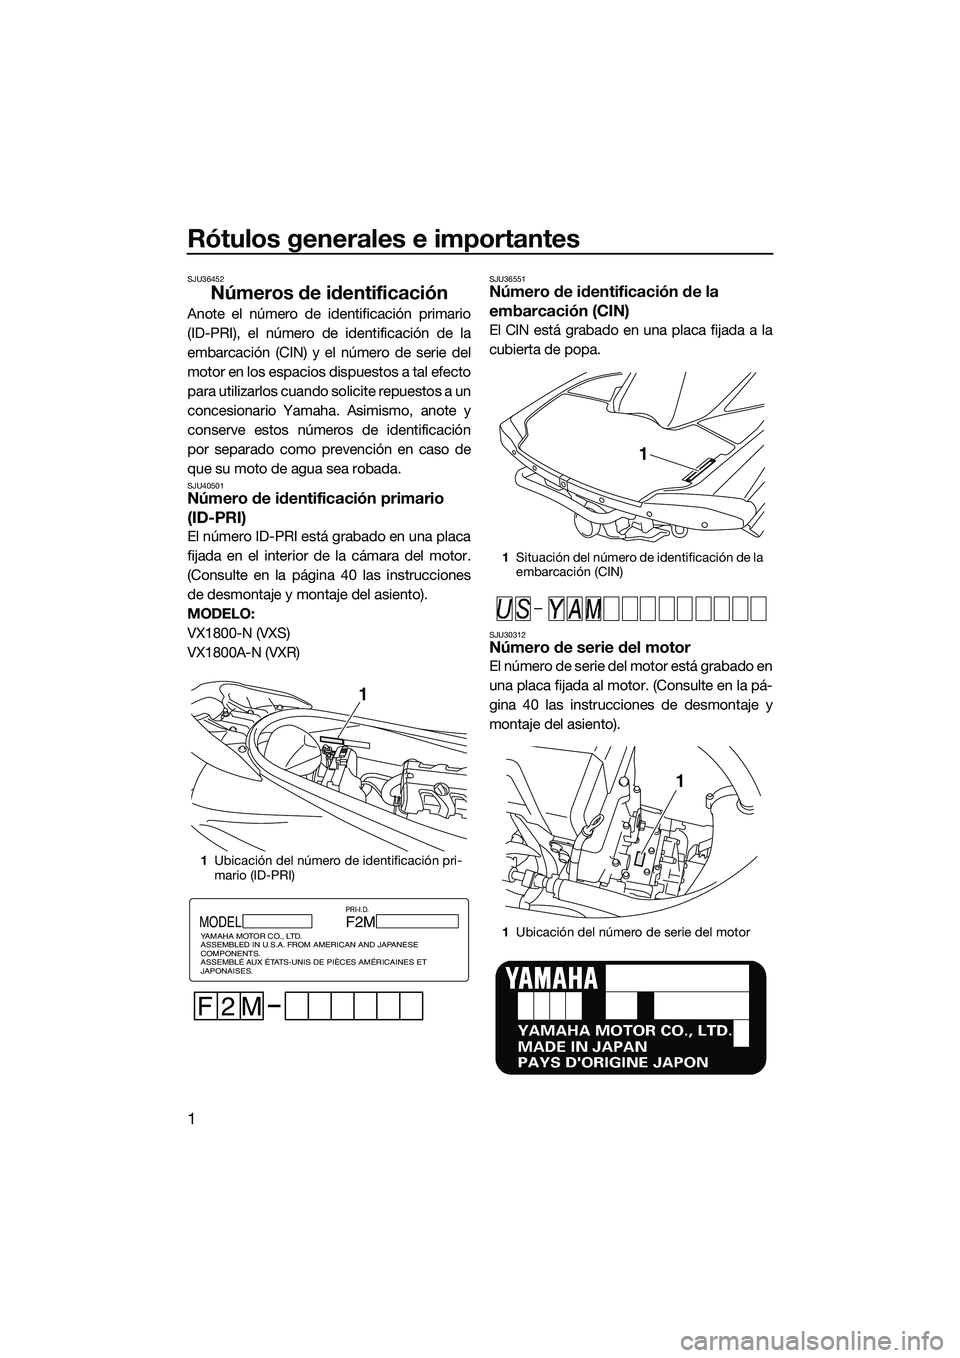 YAMAHA VXR 2014  Manuale de Empleo (in Spanish) Rótulos generales e importantes
1
SJU36452
Números de identificación
Anote el número de identificación primario
(ID-PRI), el número de identificación de la
embarcación (CIN) y el número de se